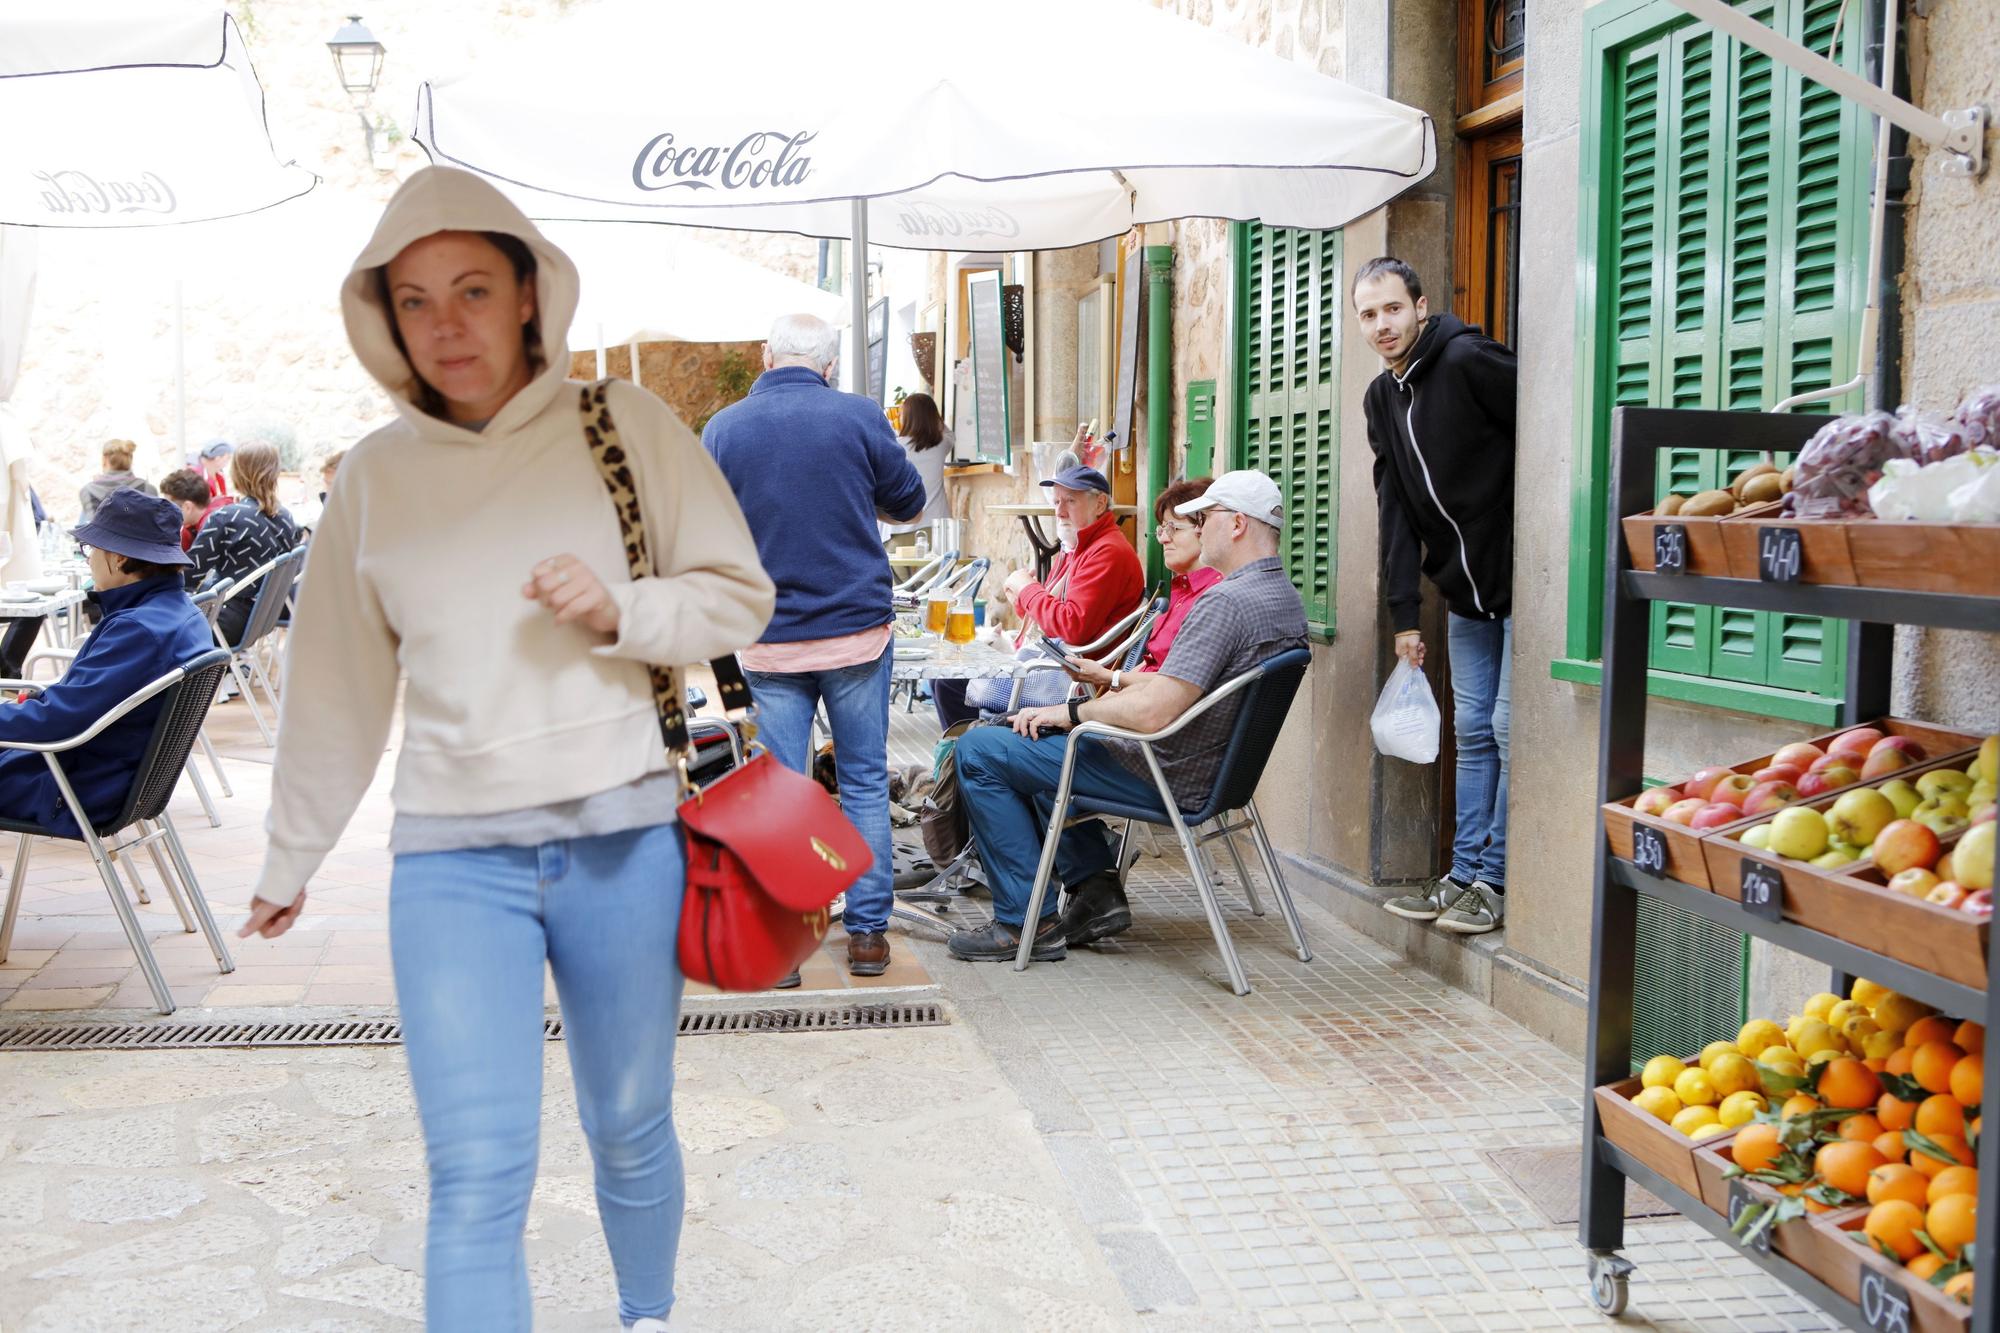 Fornalutx auf Mallorca: So sieht es derzeit im "schönsten Dorf" Spaniens aus